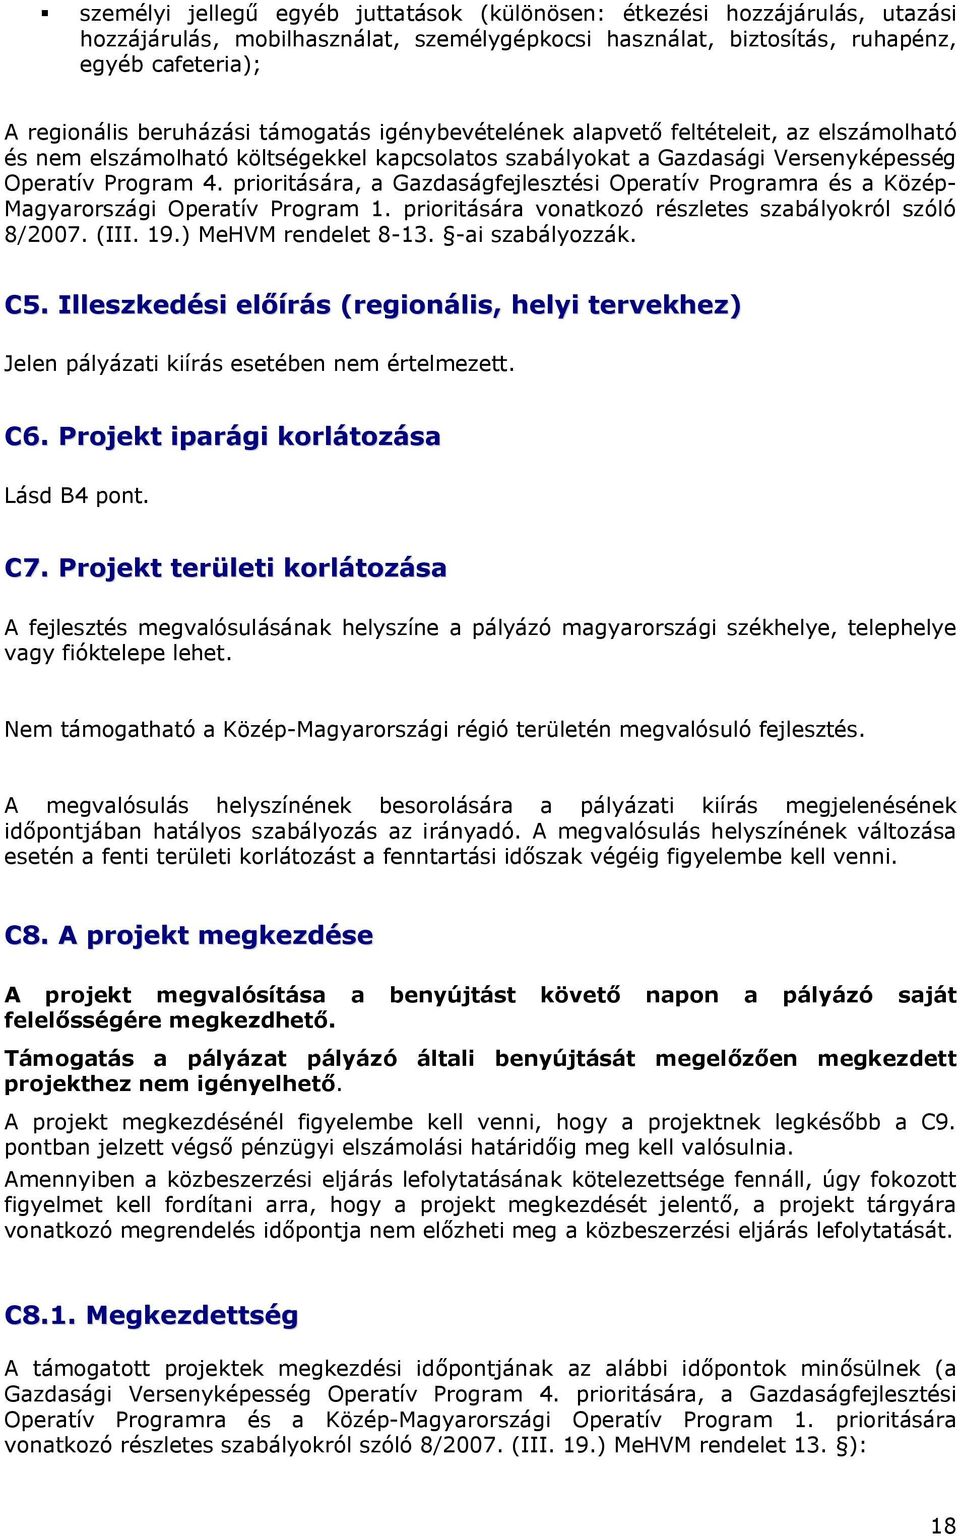 prioritására, a Gazdaságfejlesztési Operatív Programra és a Közép- Magyarországi Operatív Program 1. prioritására vonatkozó részletes szabályokról szóló 8/2007. (III. 19.) MeHVM rendelet 8-13.